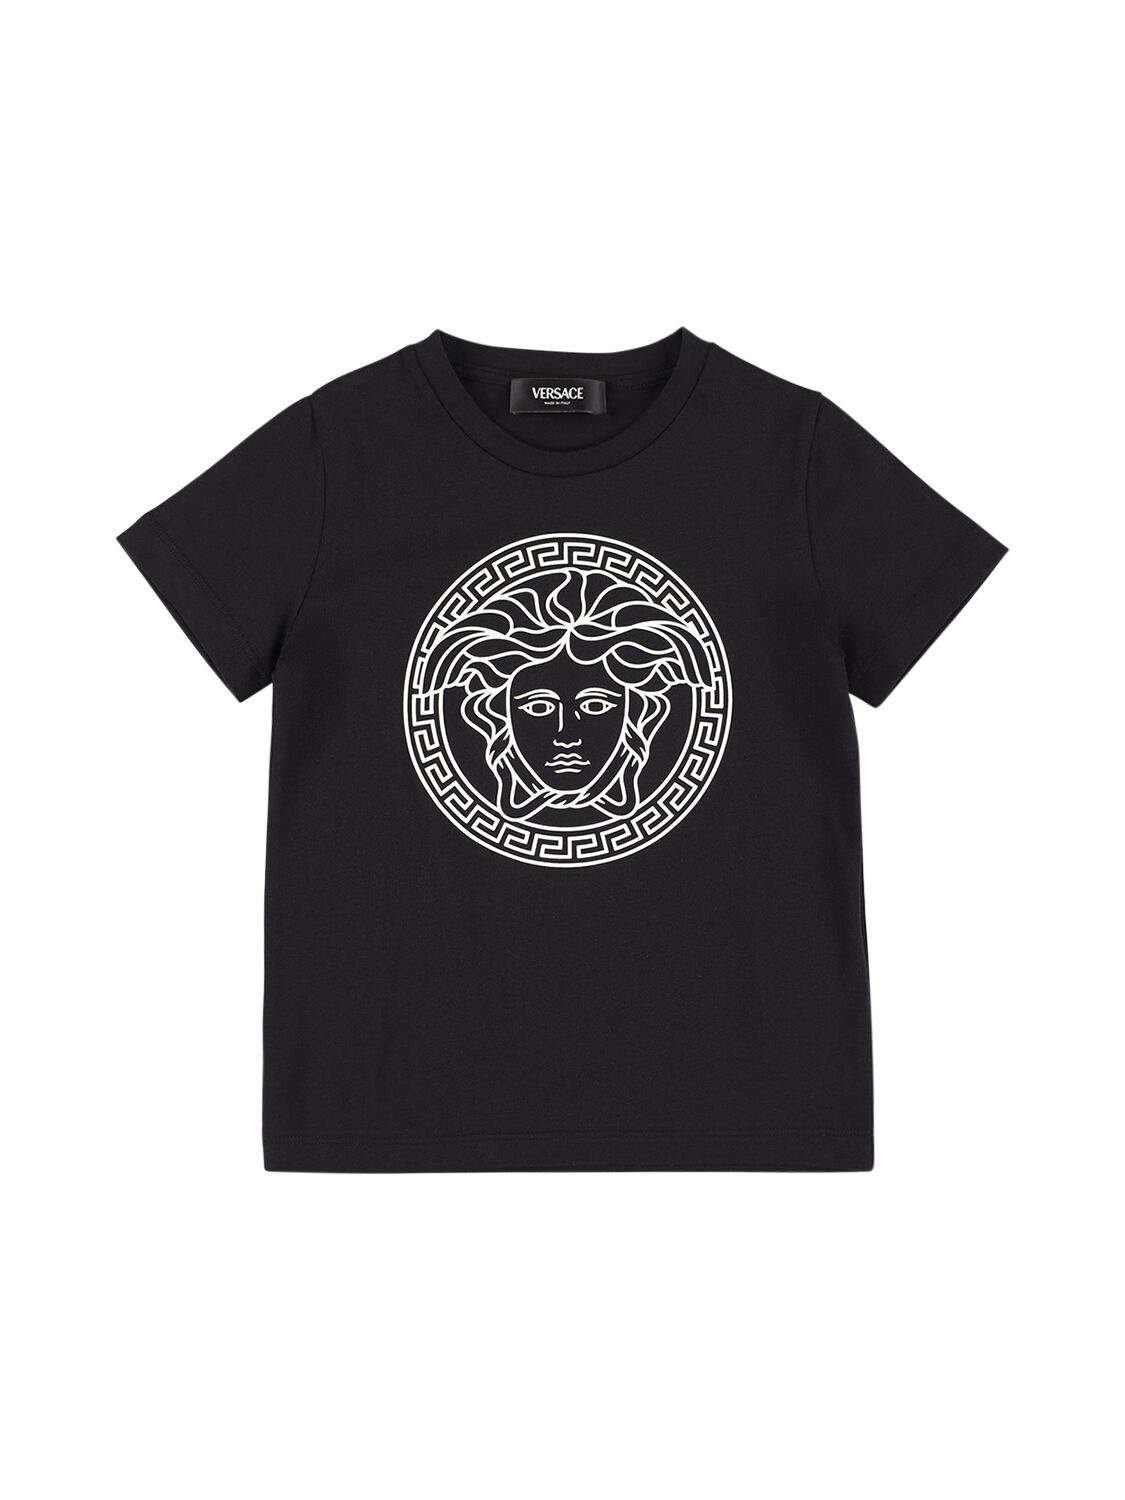 Versace Kids' T-shirt Aus Baumwolljersey Mit Medusadruck In Schwarz,weiss